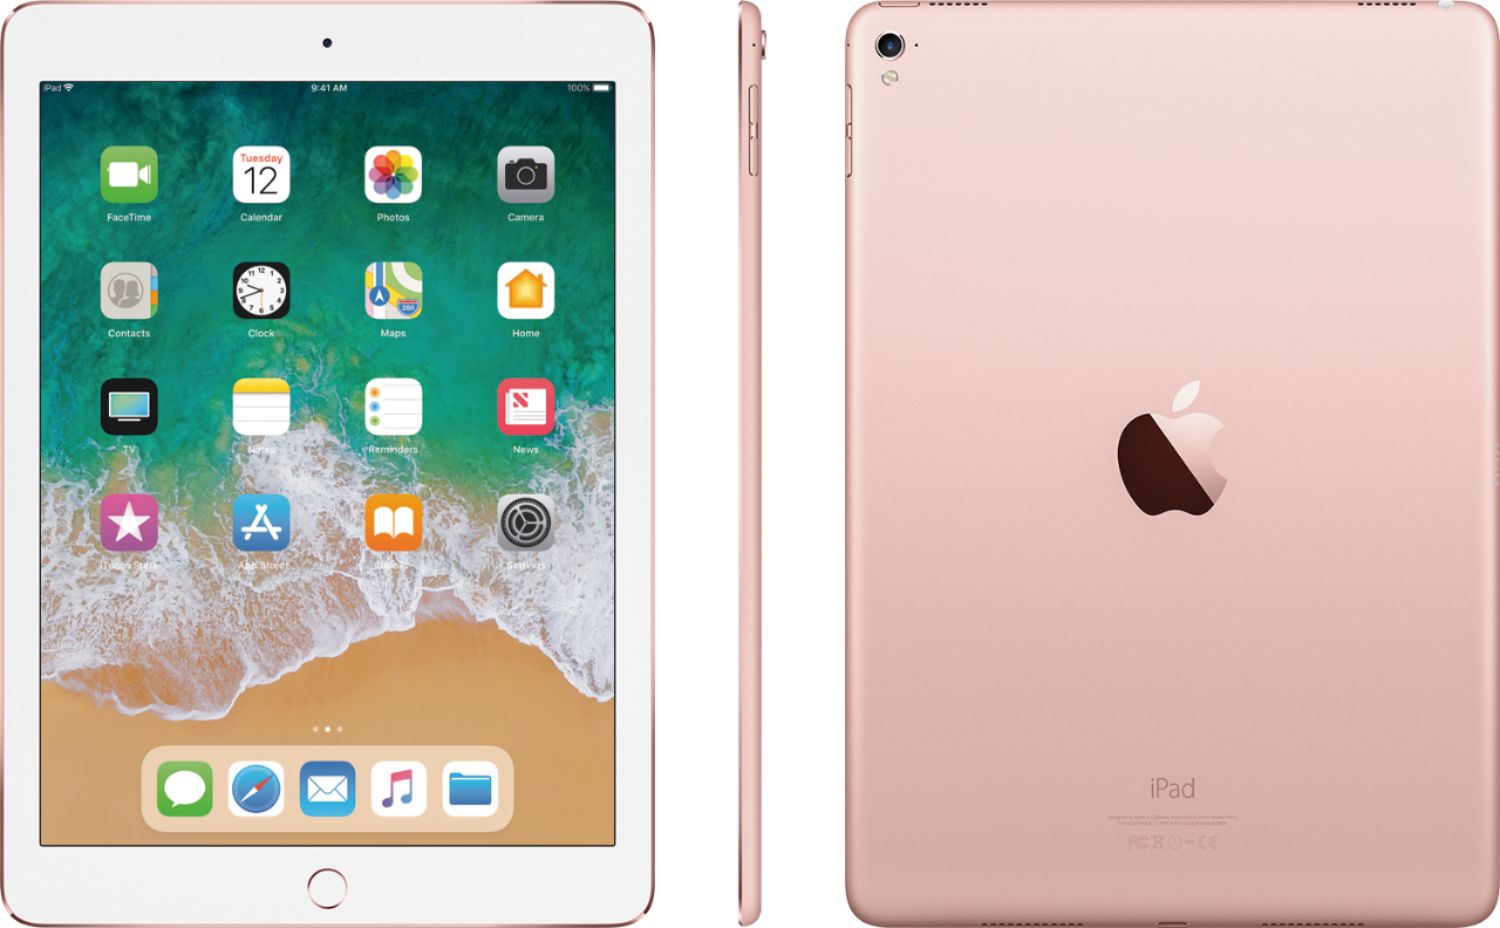 Rose Gold MM192LL/A Apple iPad Pro 9.7" Tablet 128GB Wi-Fi 